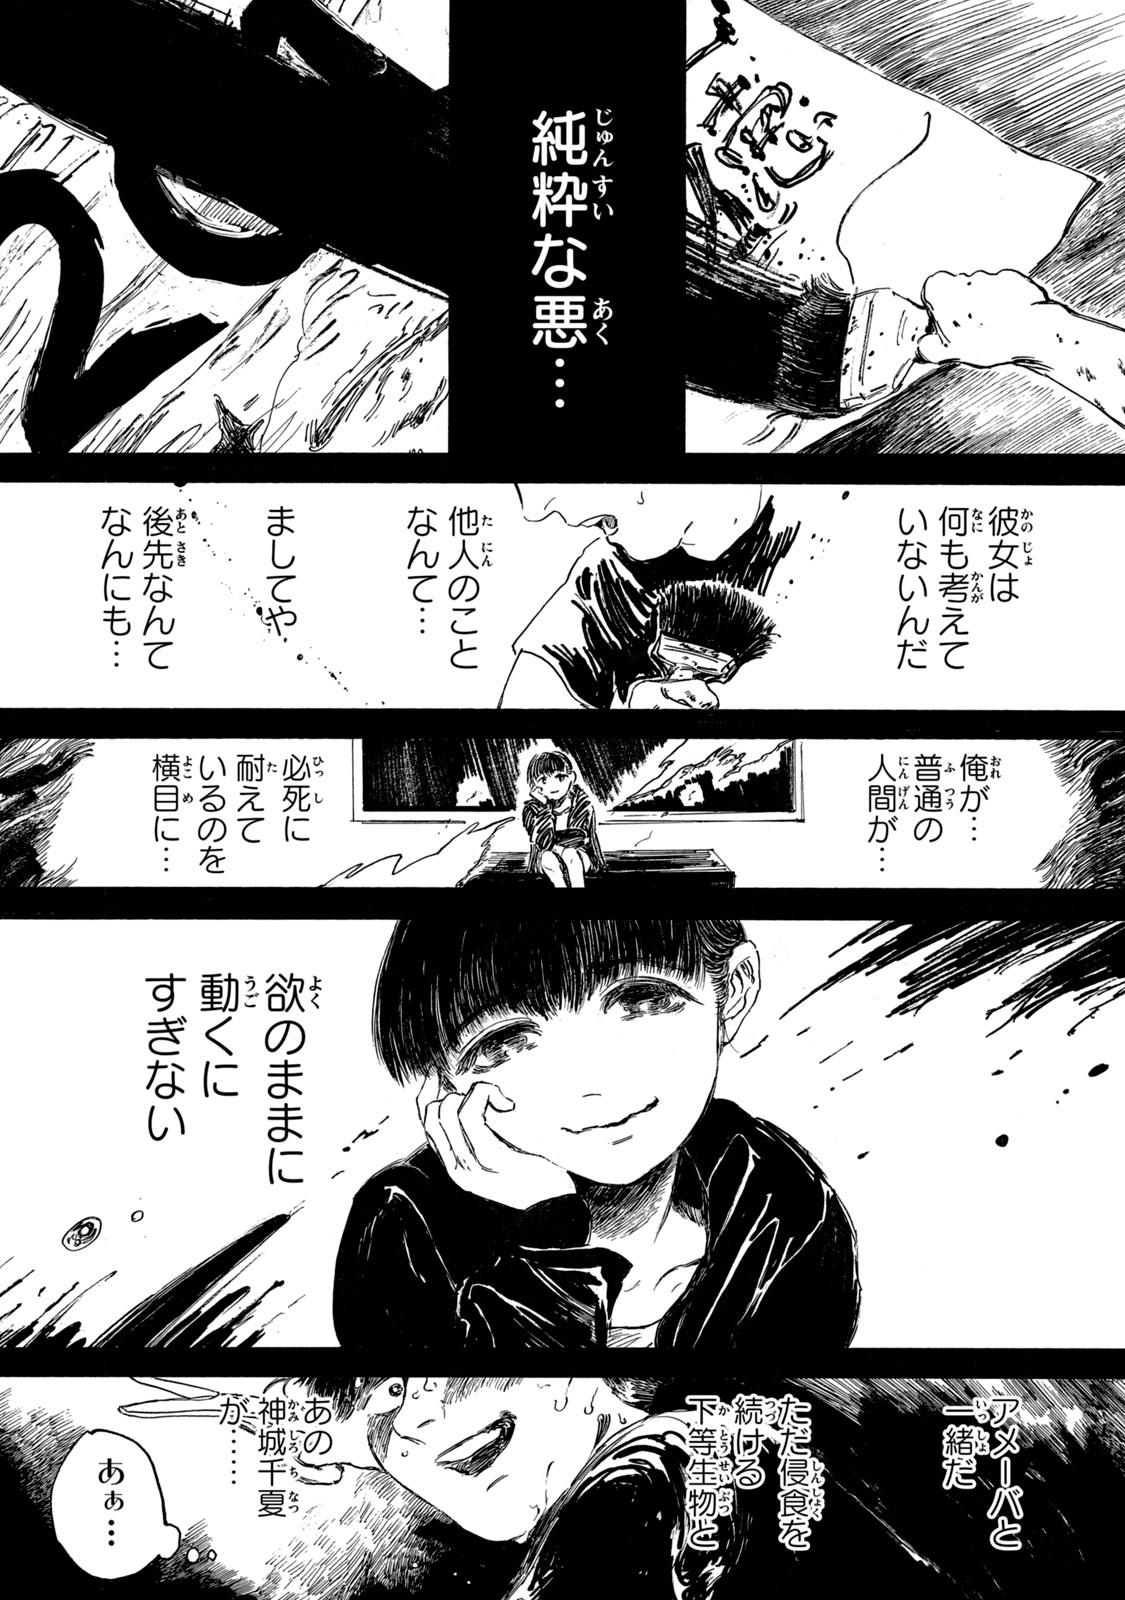 Watashi no Hara no Naka no Bakemono - Chapter 9 - Page 15